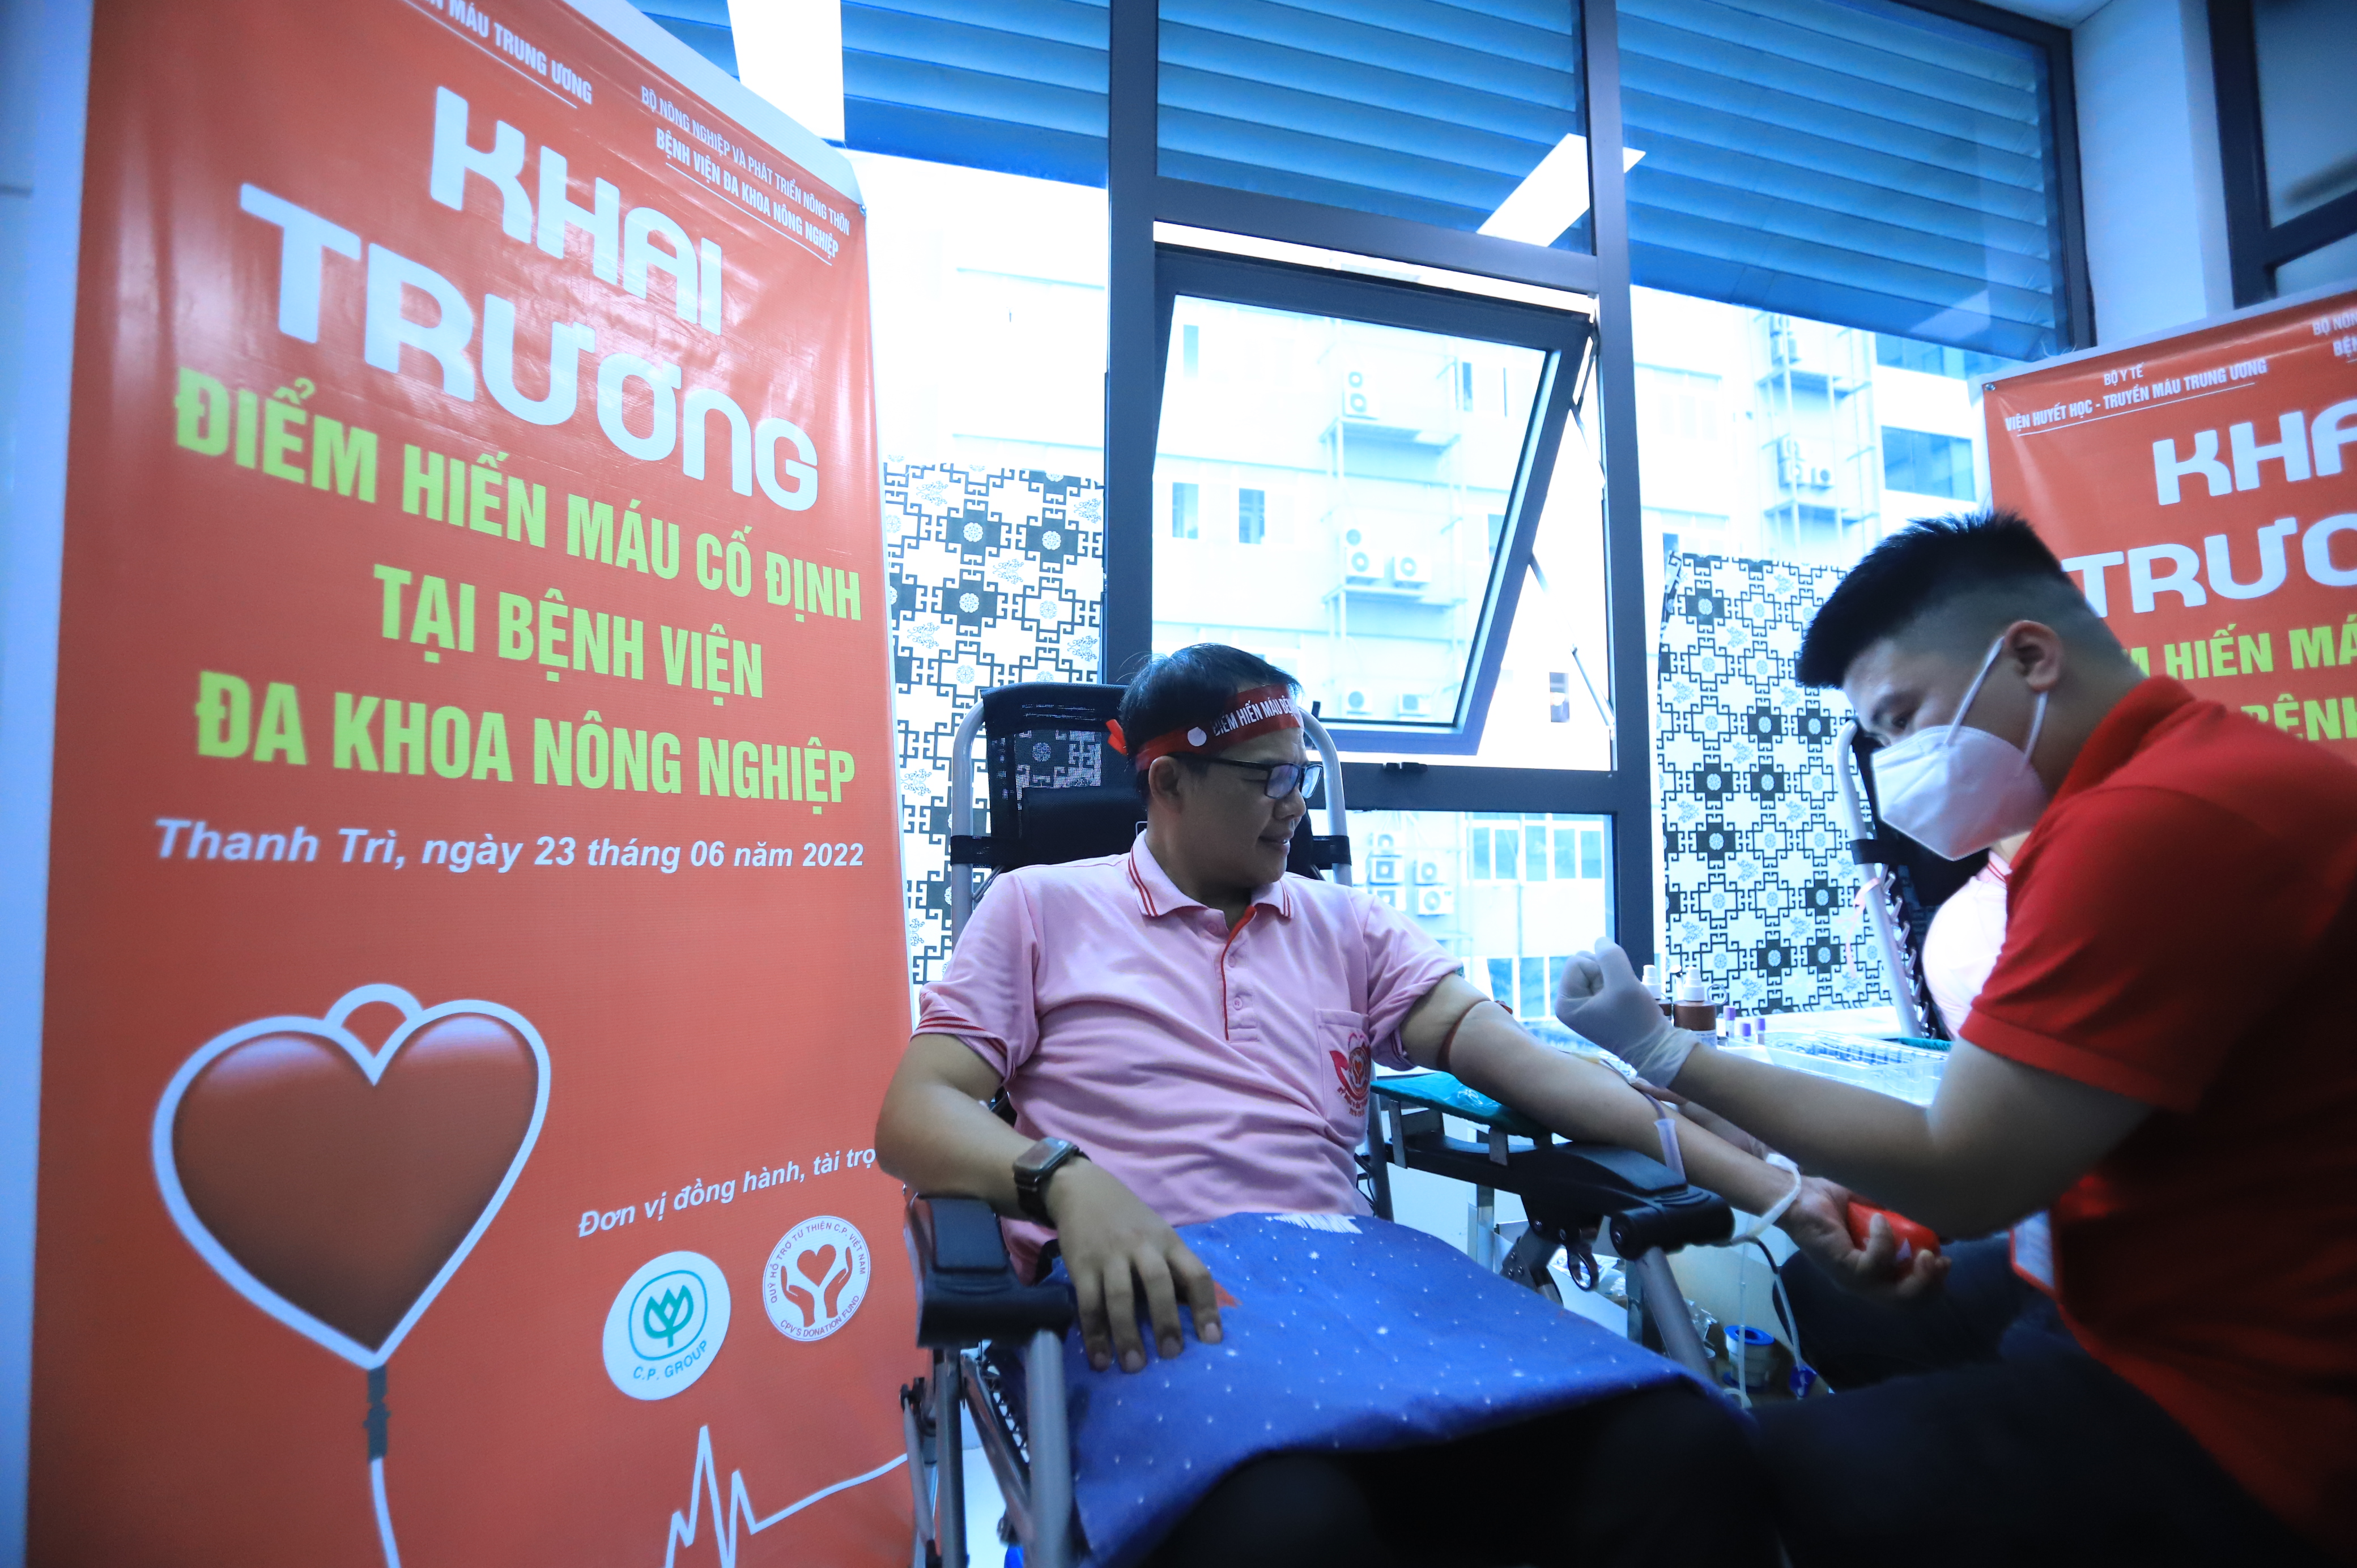 Điểm hiến máu cố định thứ 4 tại Hà Nội chính thức hoạt động-6